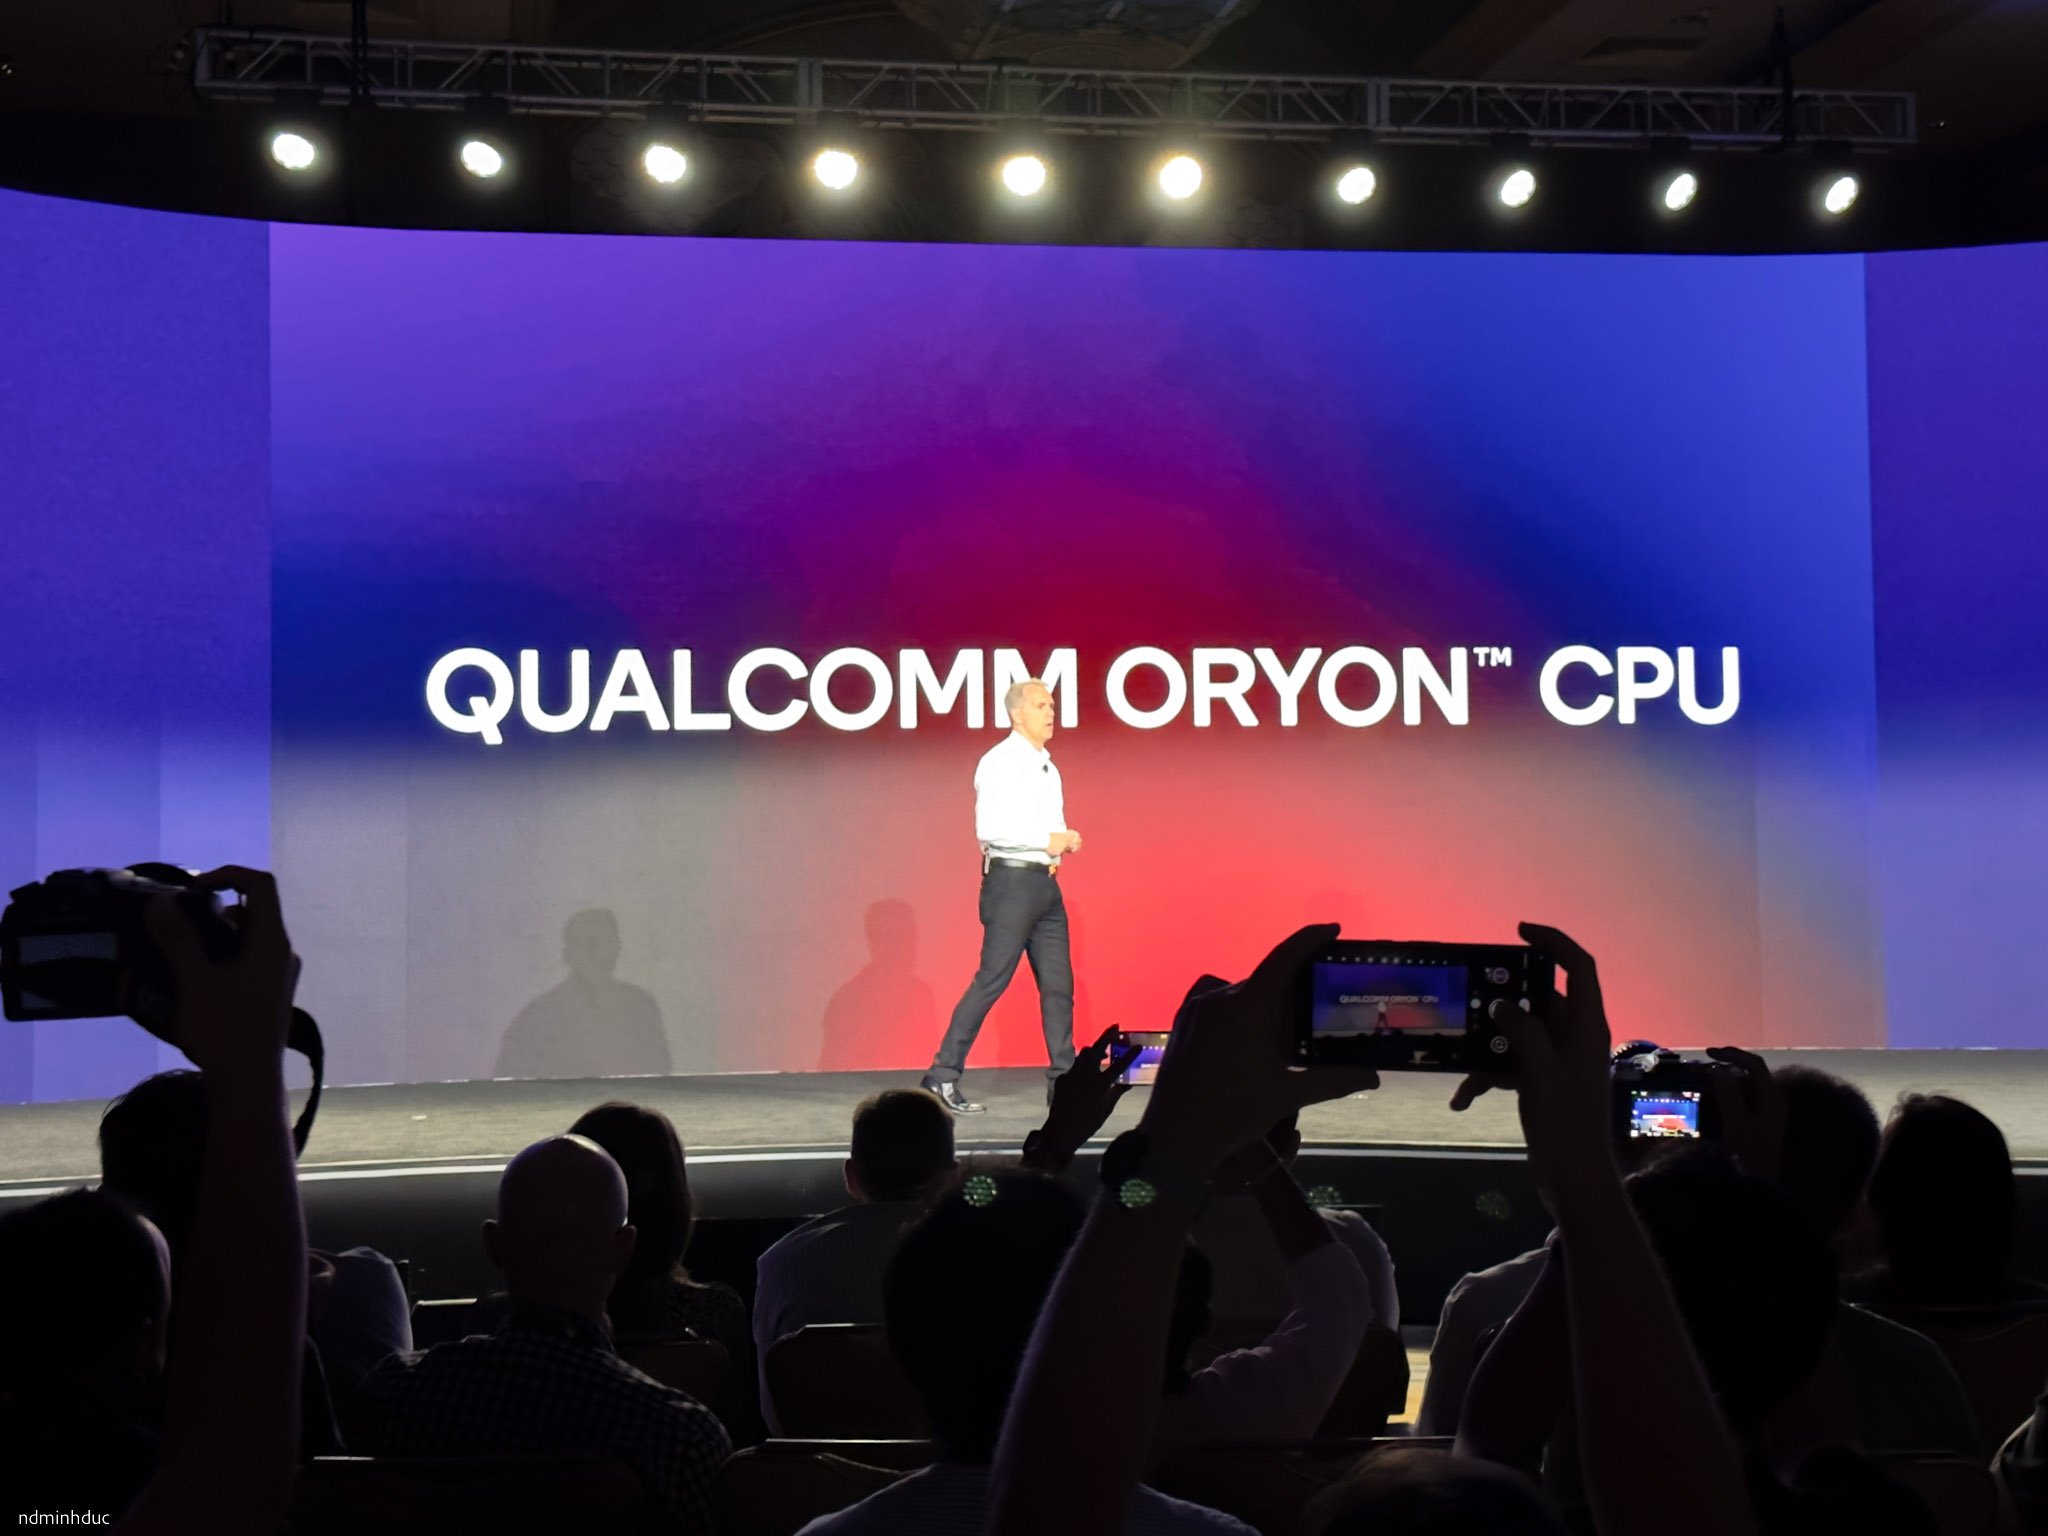 CPU cho máy tính ARM chạy Windows của Qualcomm: Oryon